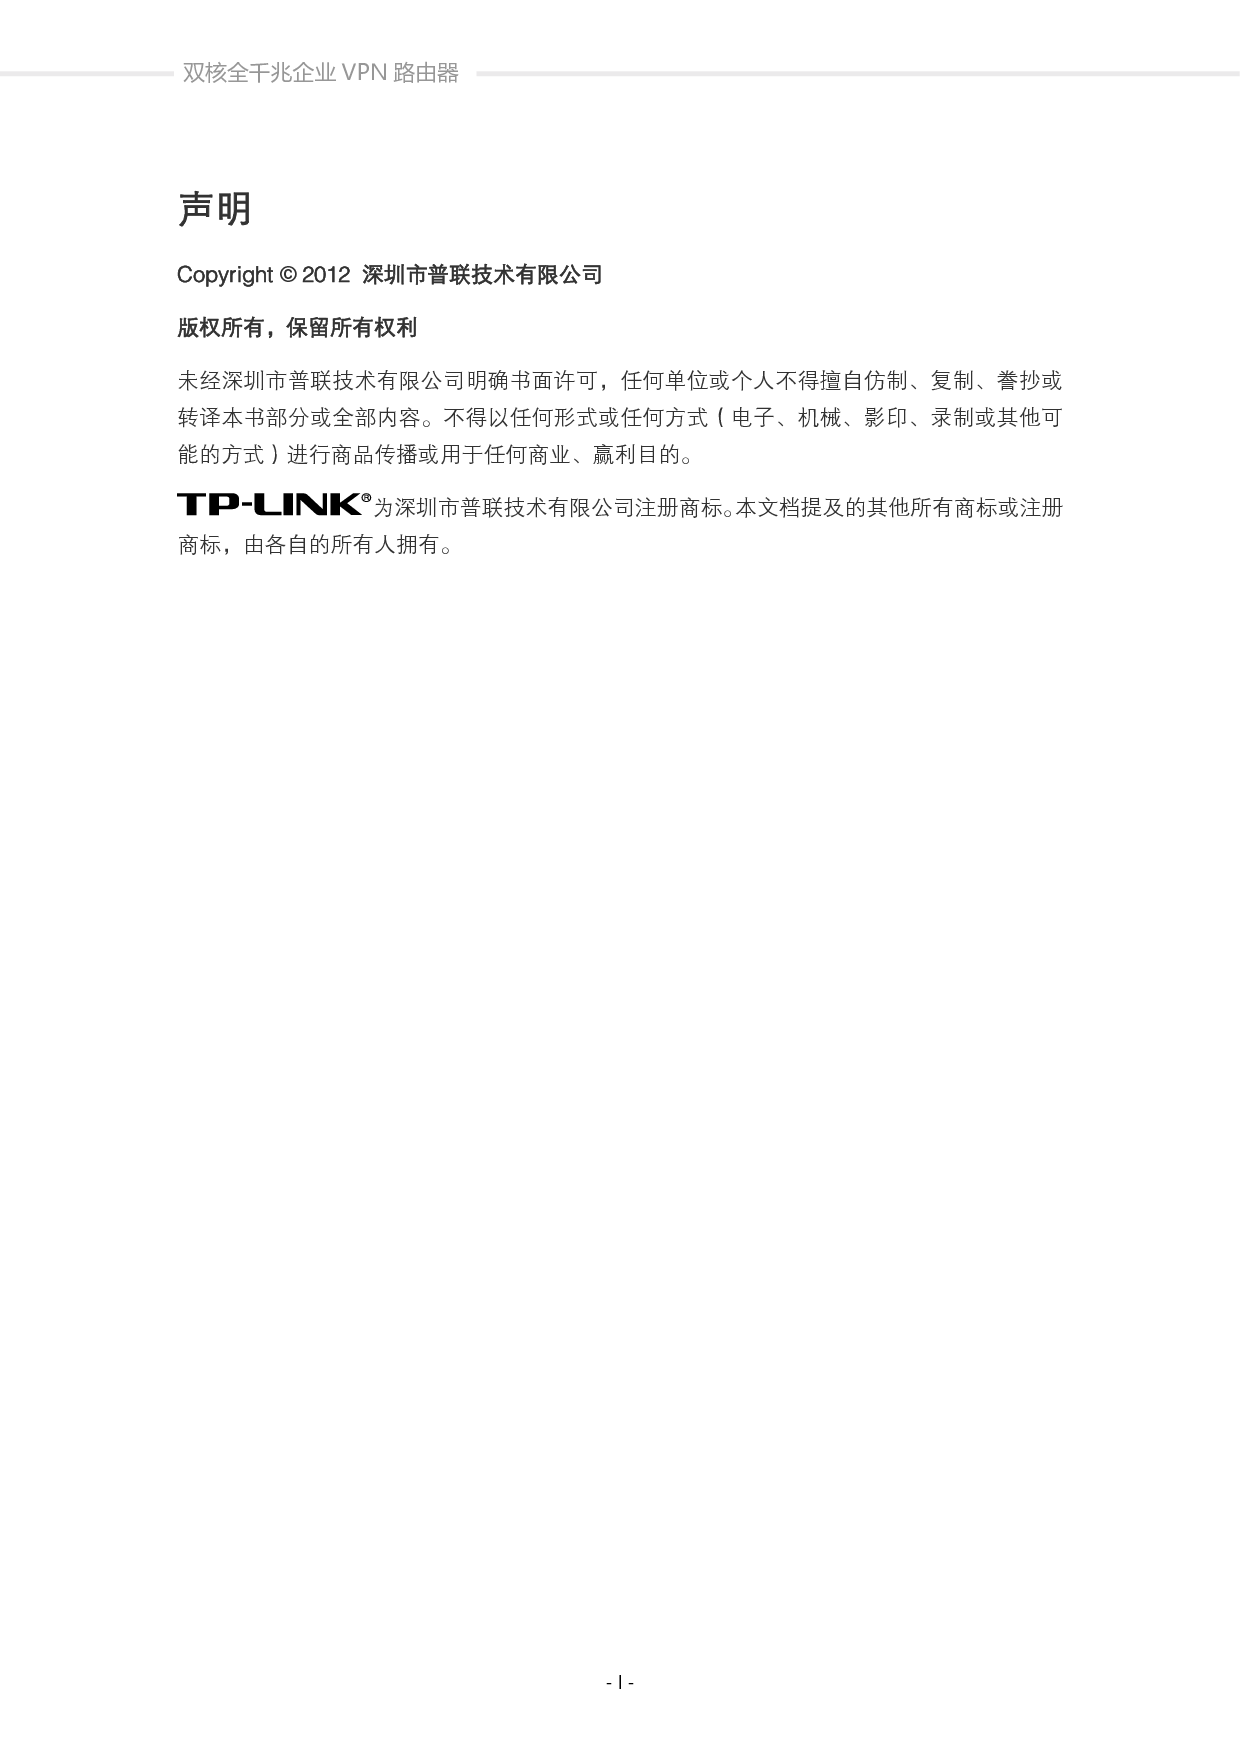 普联 TP-Link TL-ER6520G 用户手册 第1页